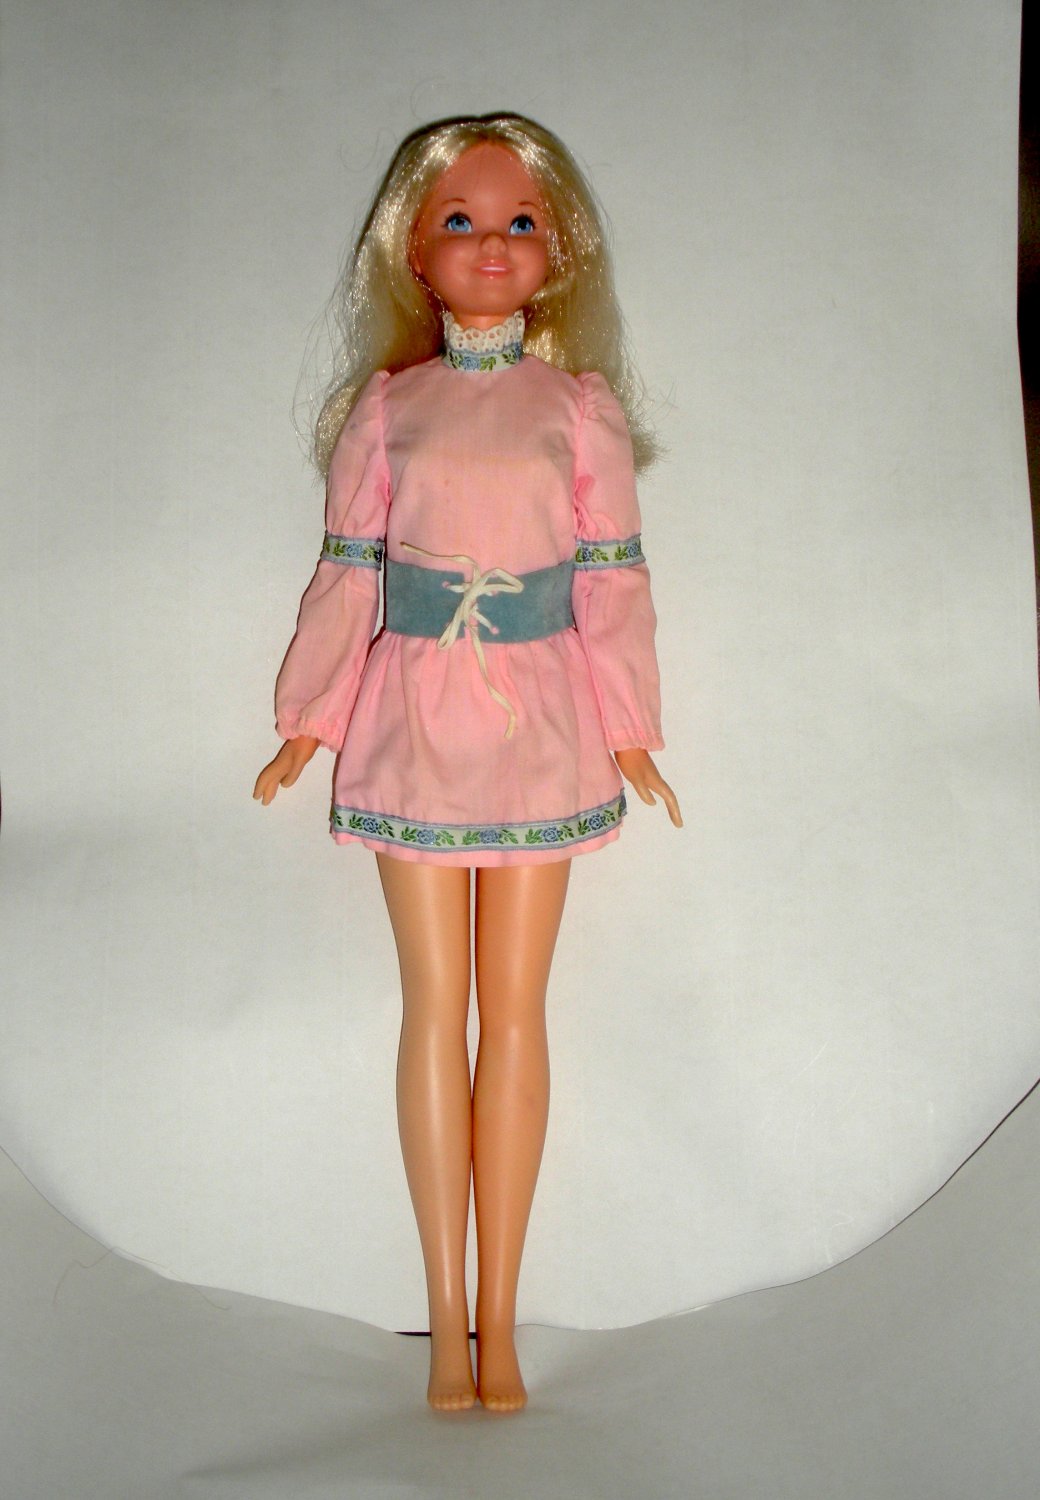 Cynthia Doll Mattel 1971